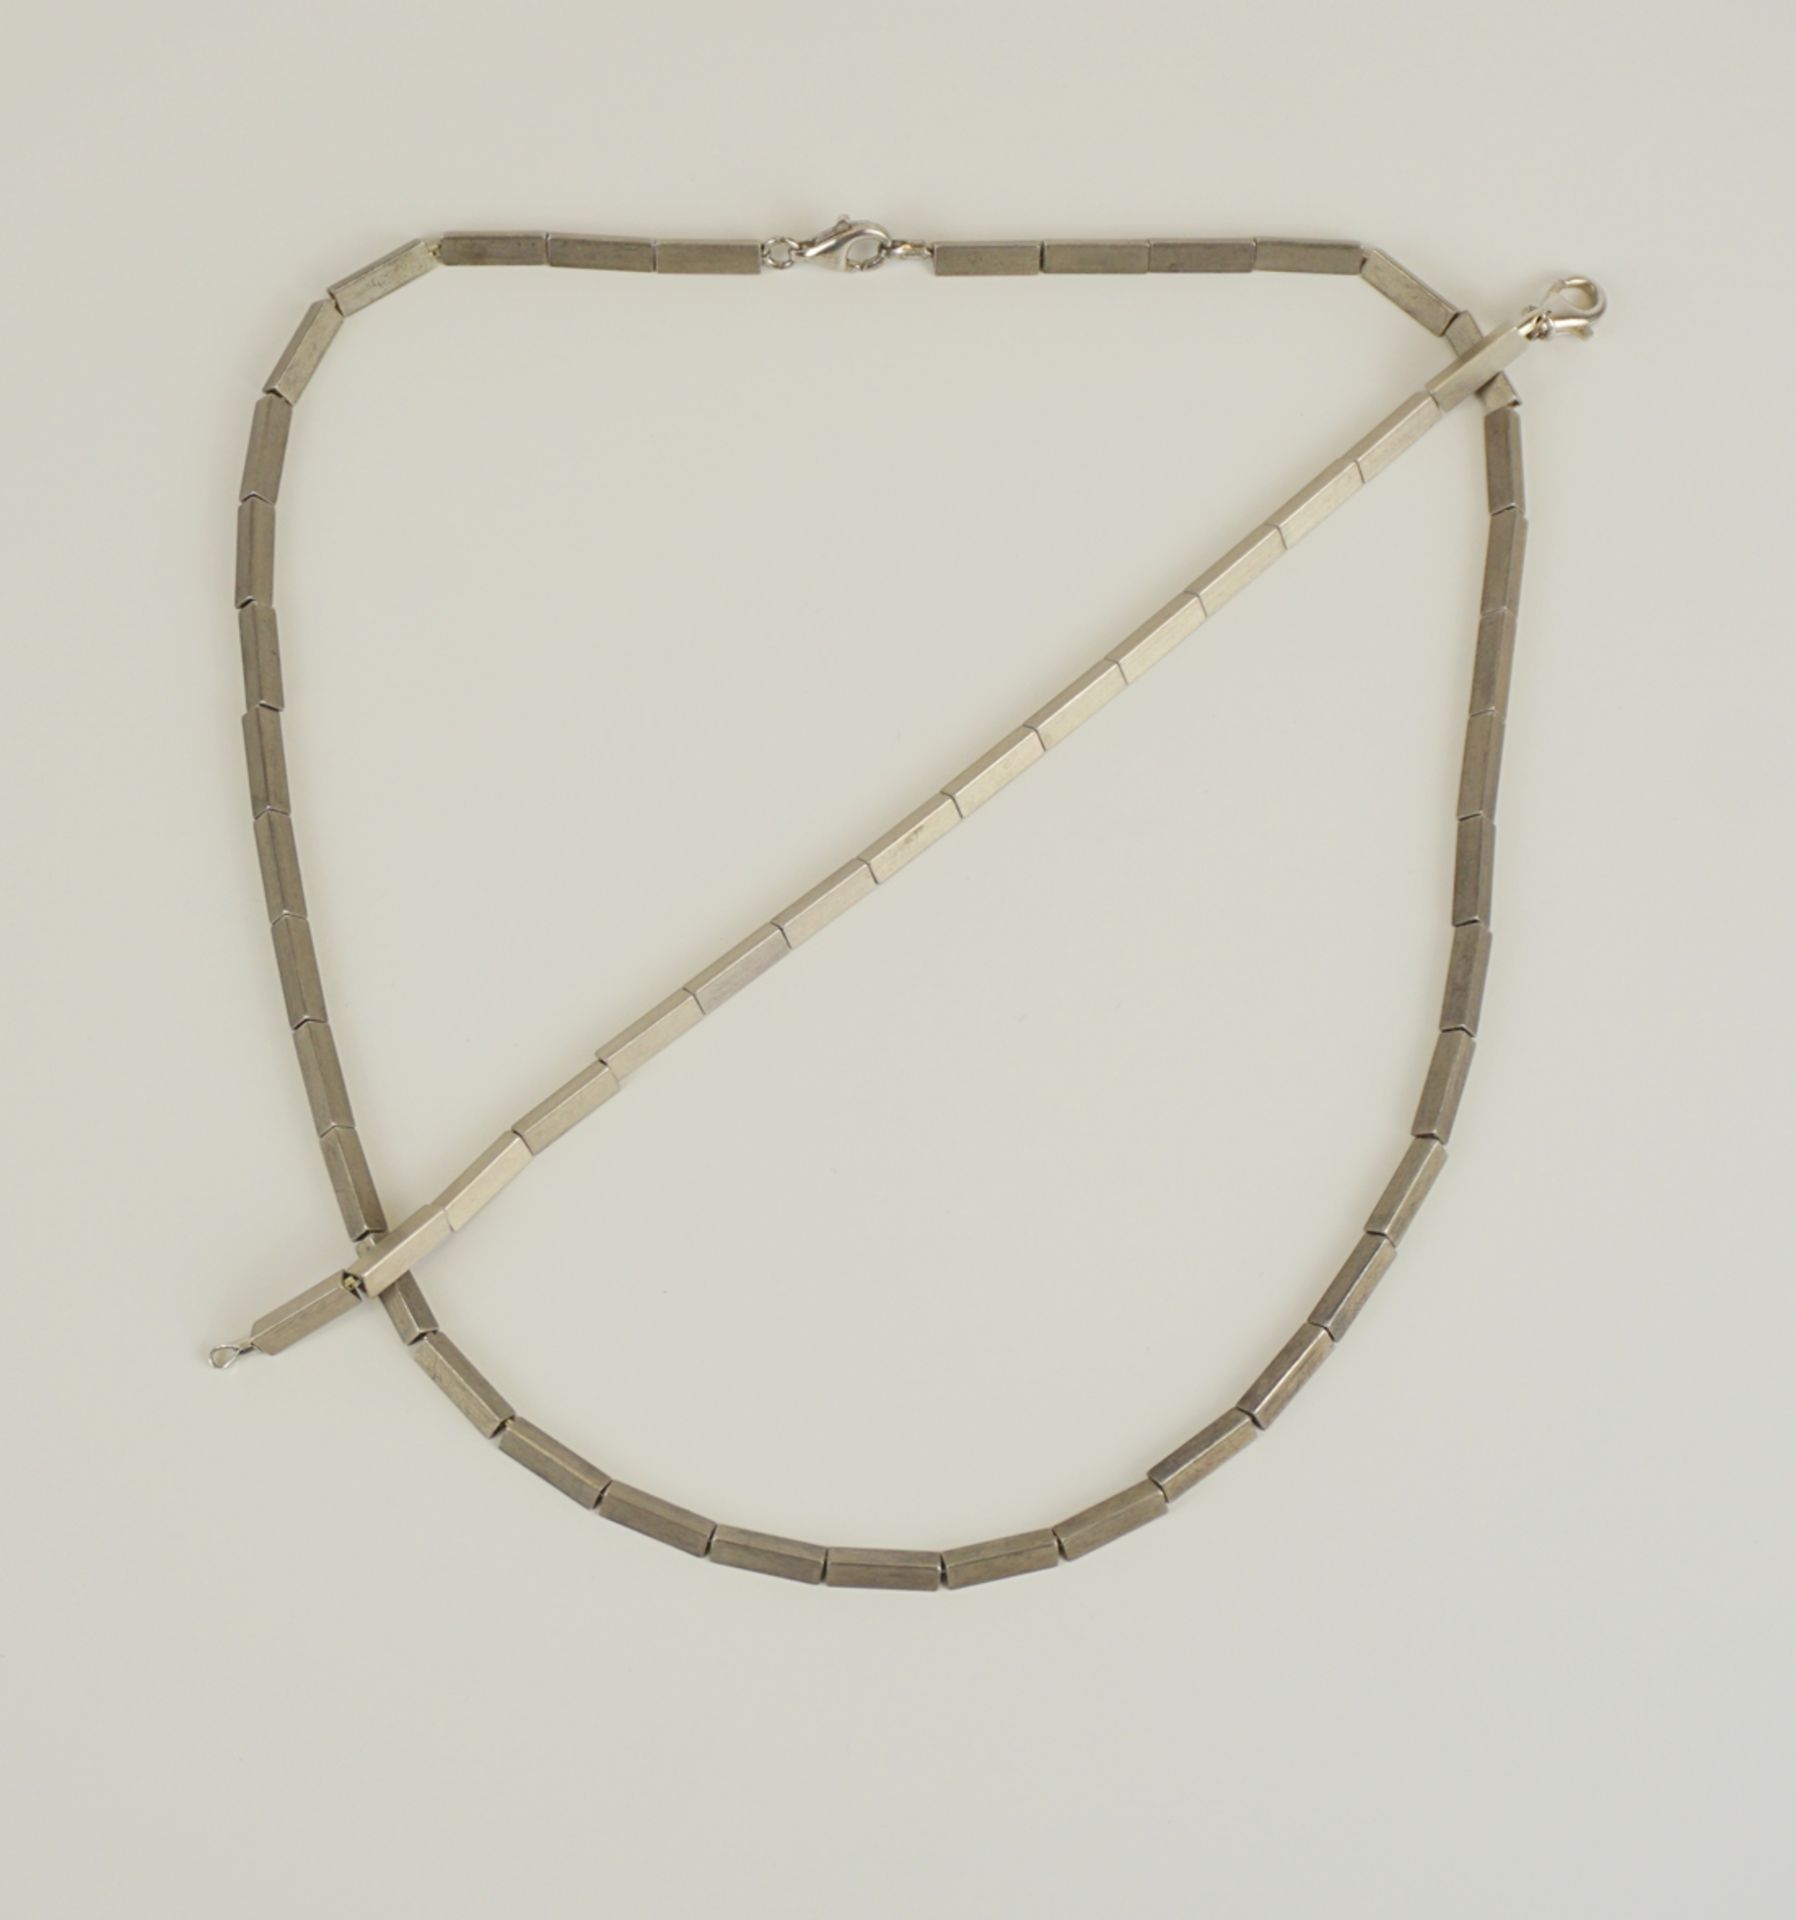 Collier und Armband mit dreieckigen Gliedern, 925er Silber, Gew.31,29g